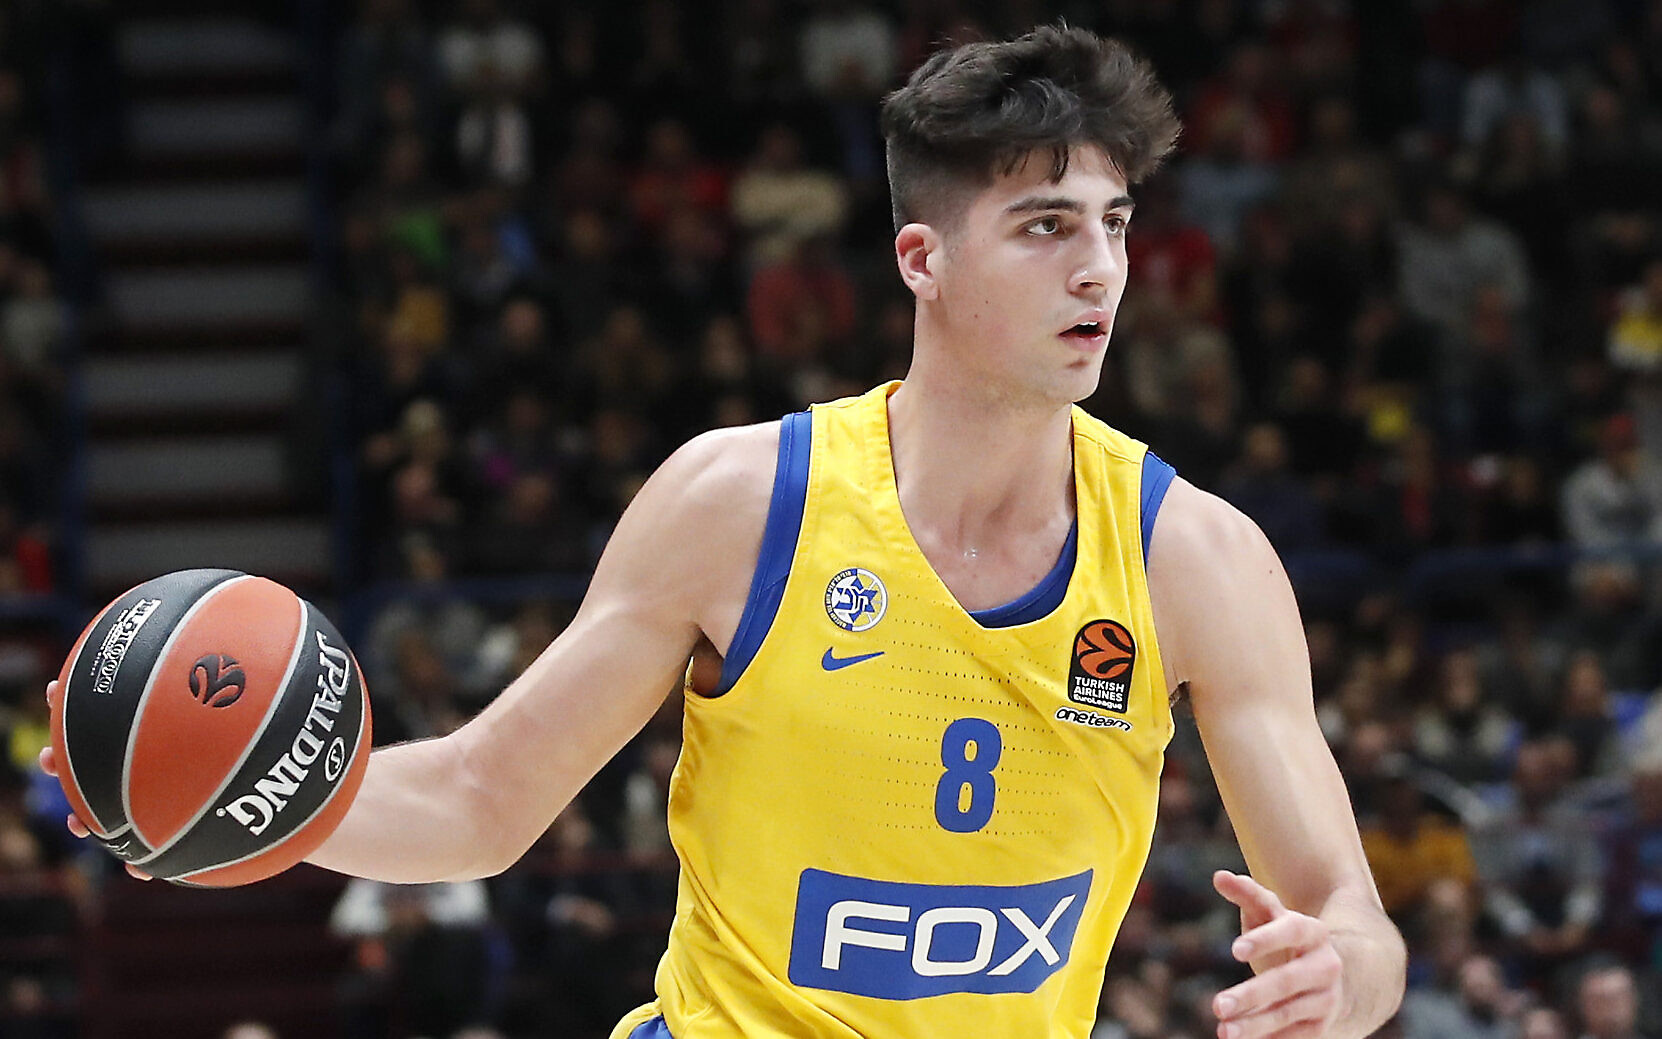 Top Israeli basketball prospect Deni 